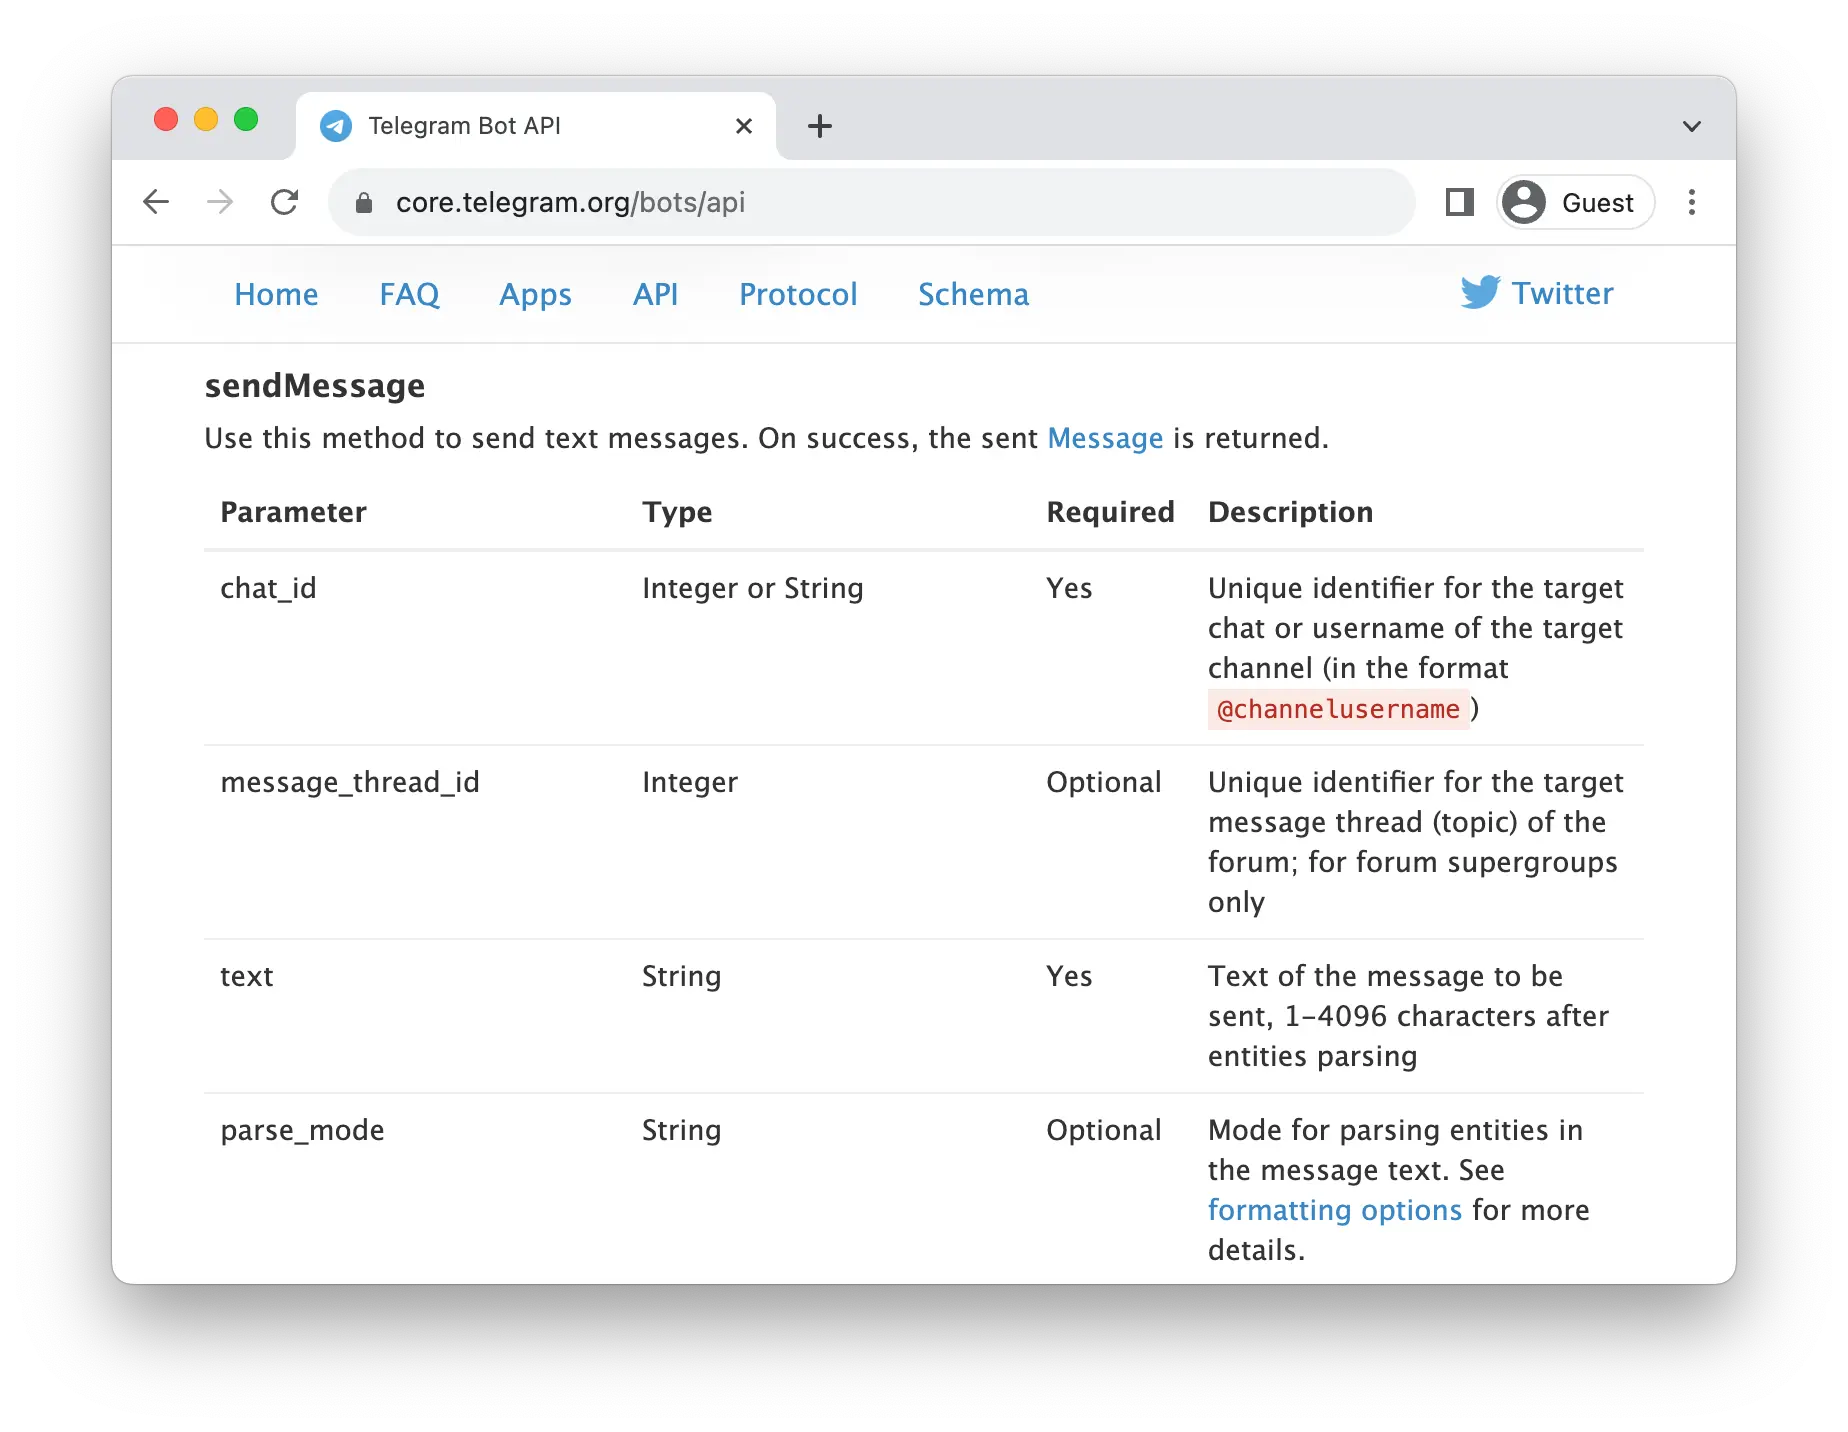 Telegram Bot API webpage